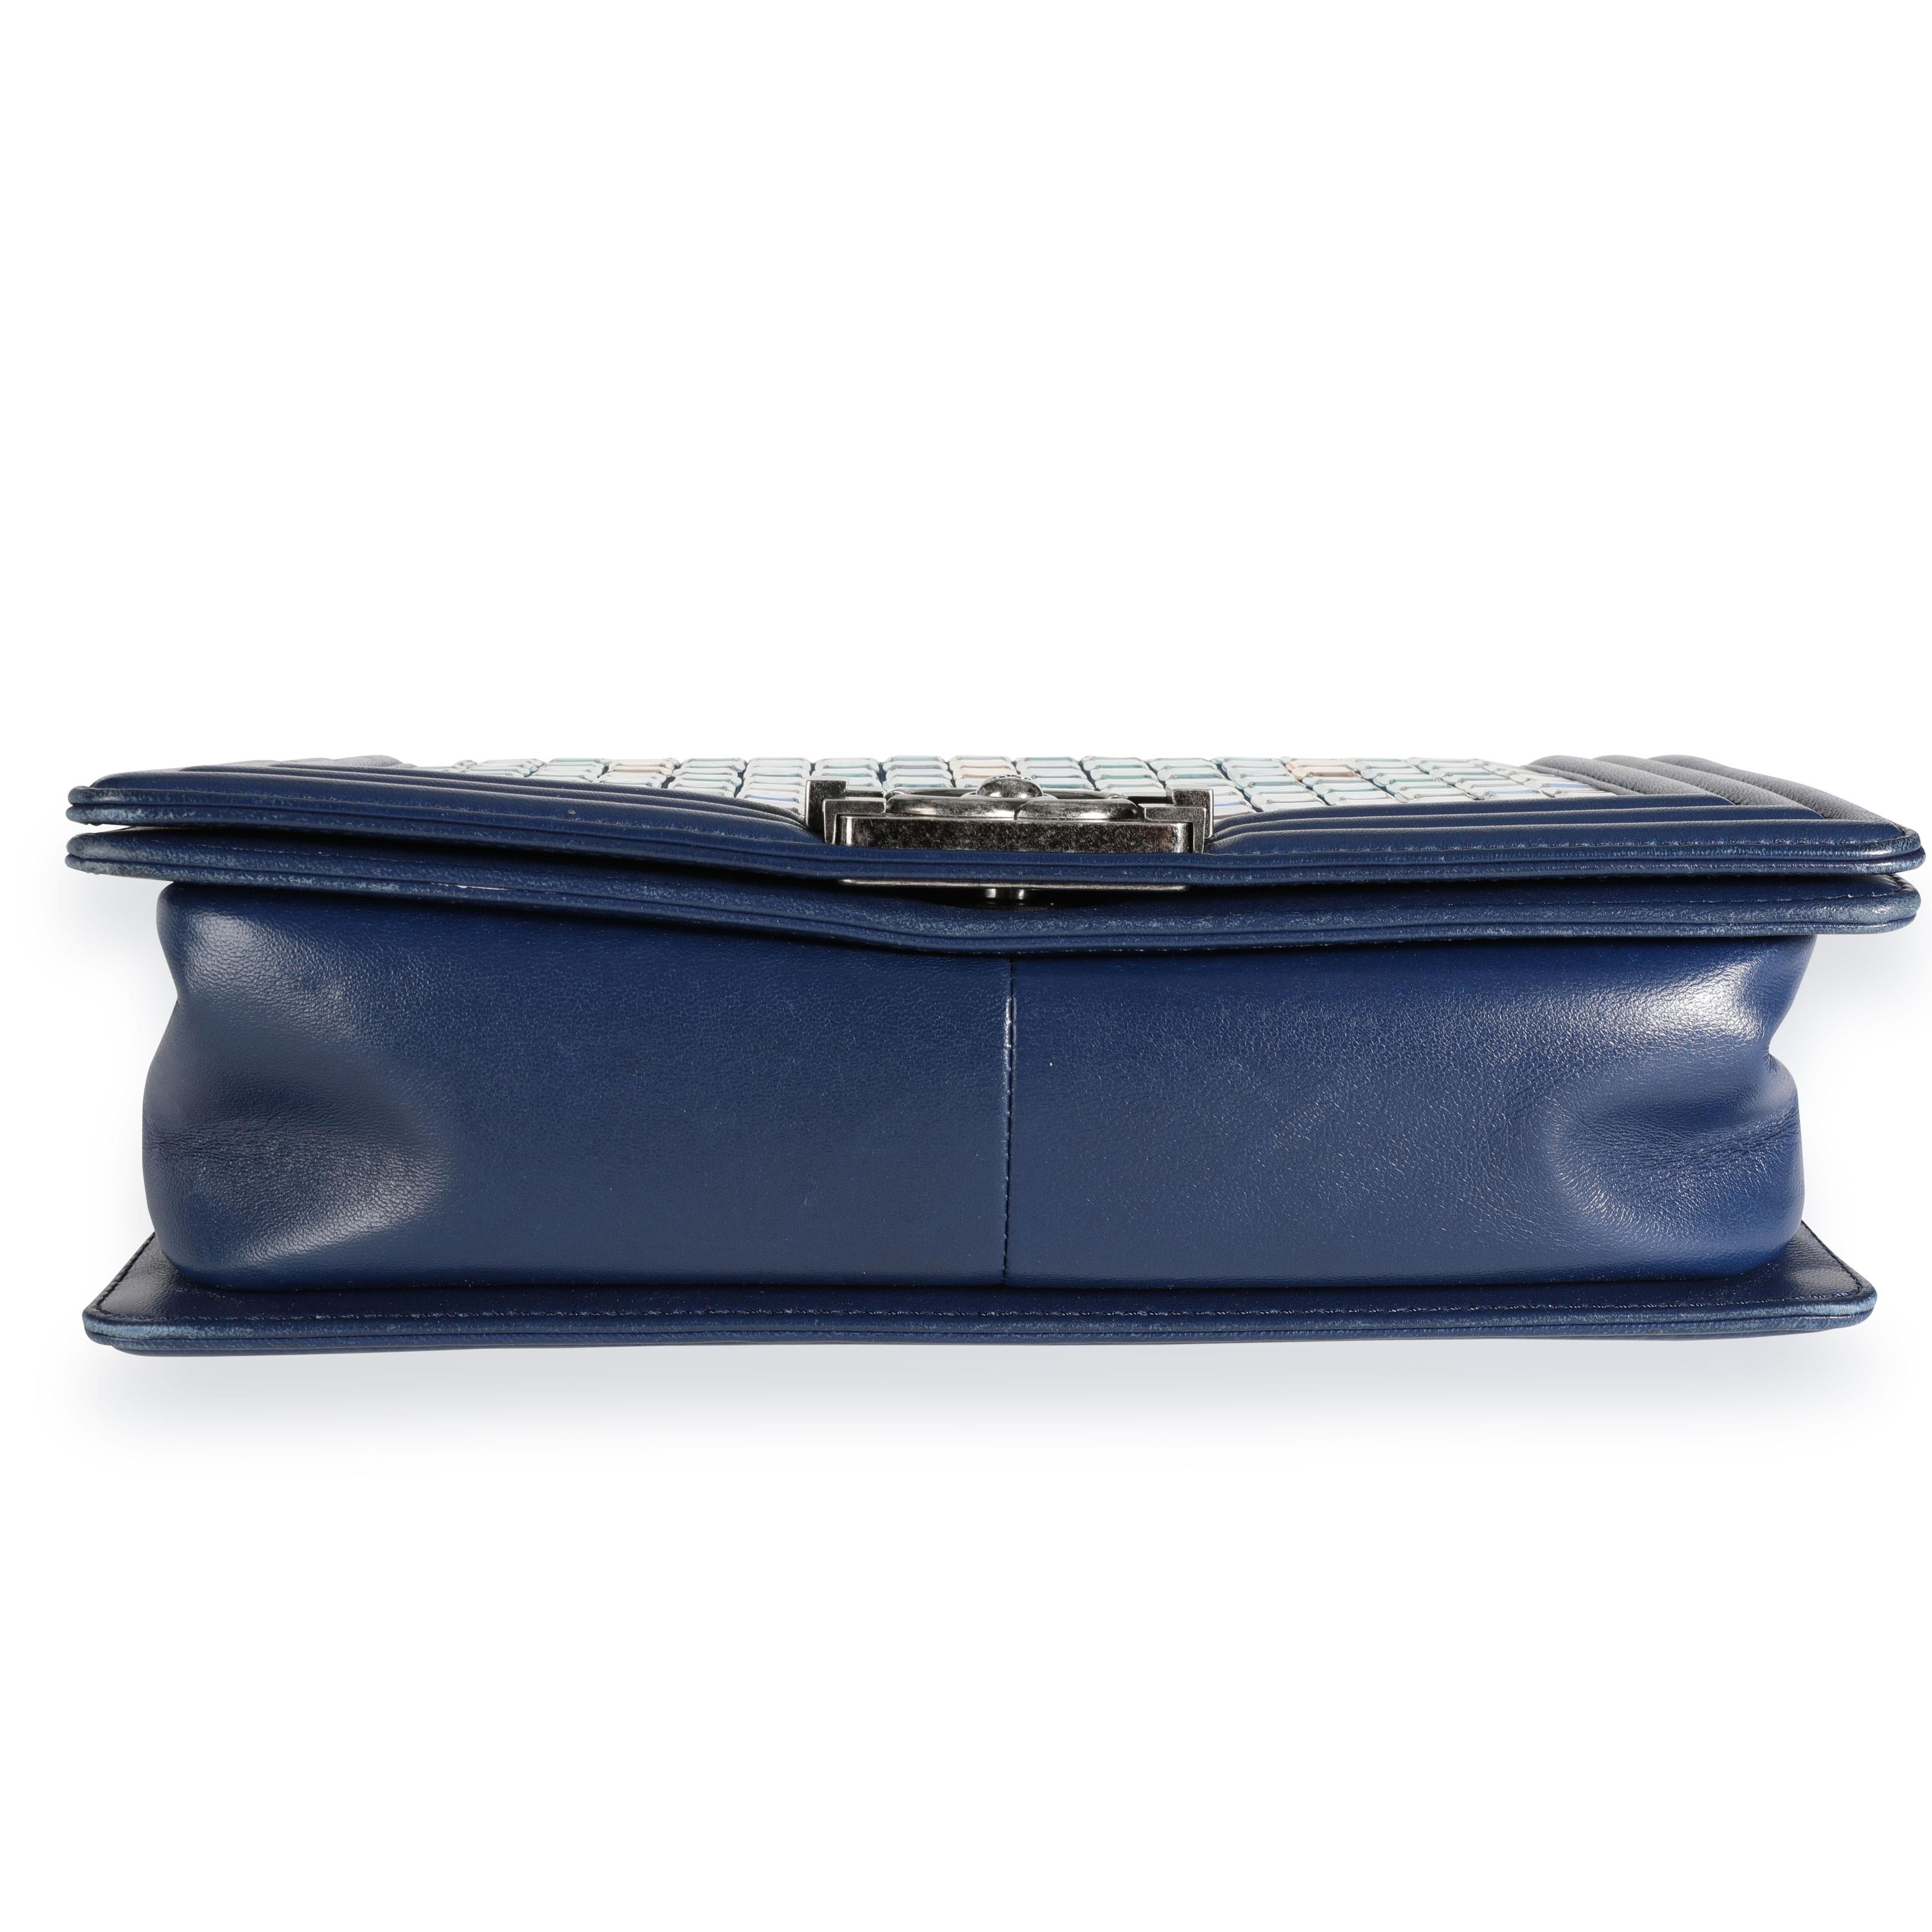 Chanel Limited Edition Navy Blue Leather & Mosaic Medium Boy Bag 2